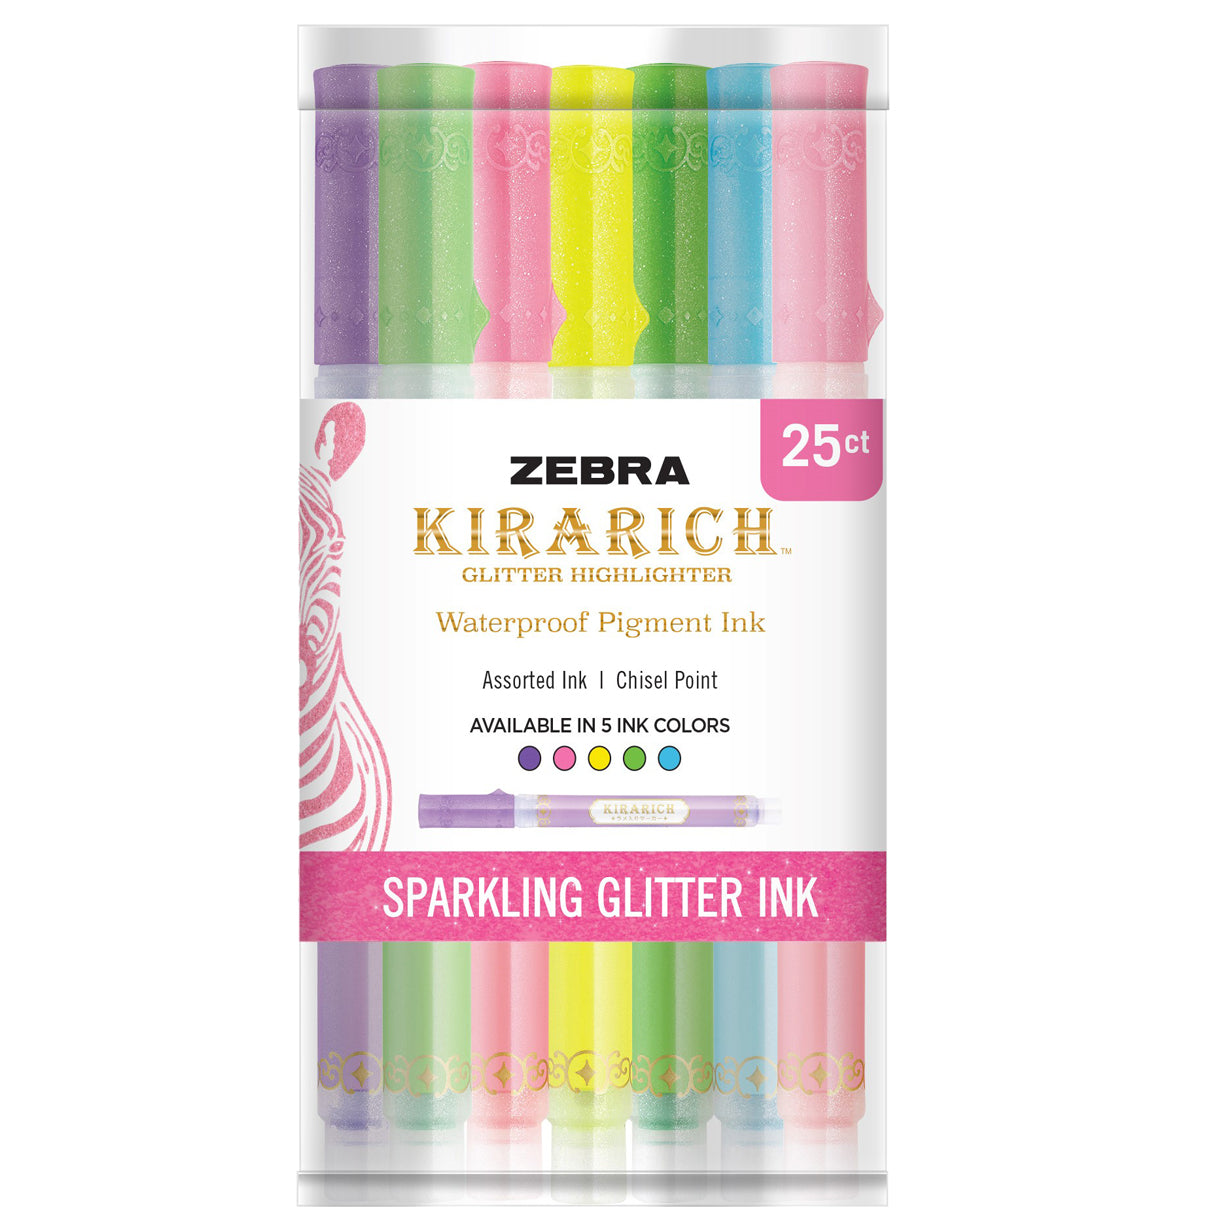 Zebra Glitter Highlighter, Kirarich, Pack of 5